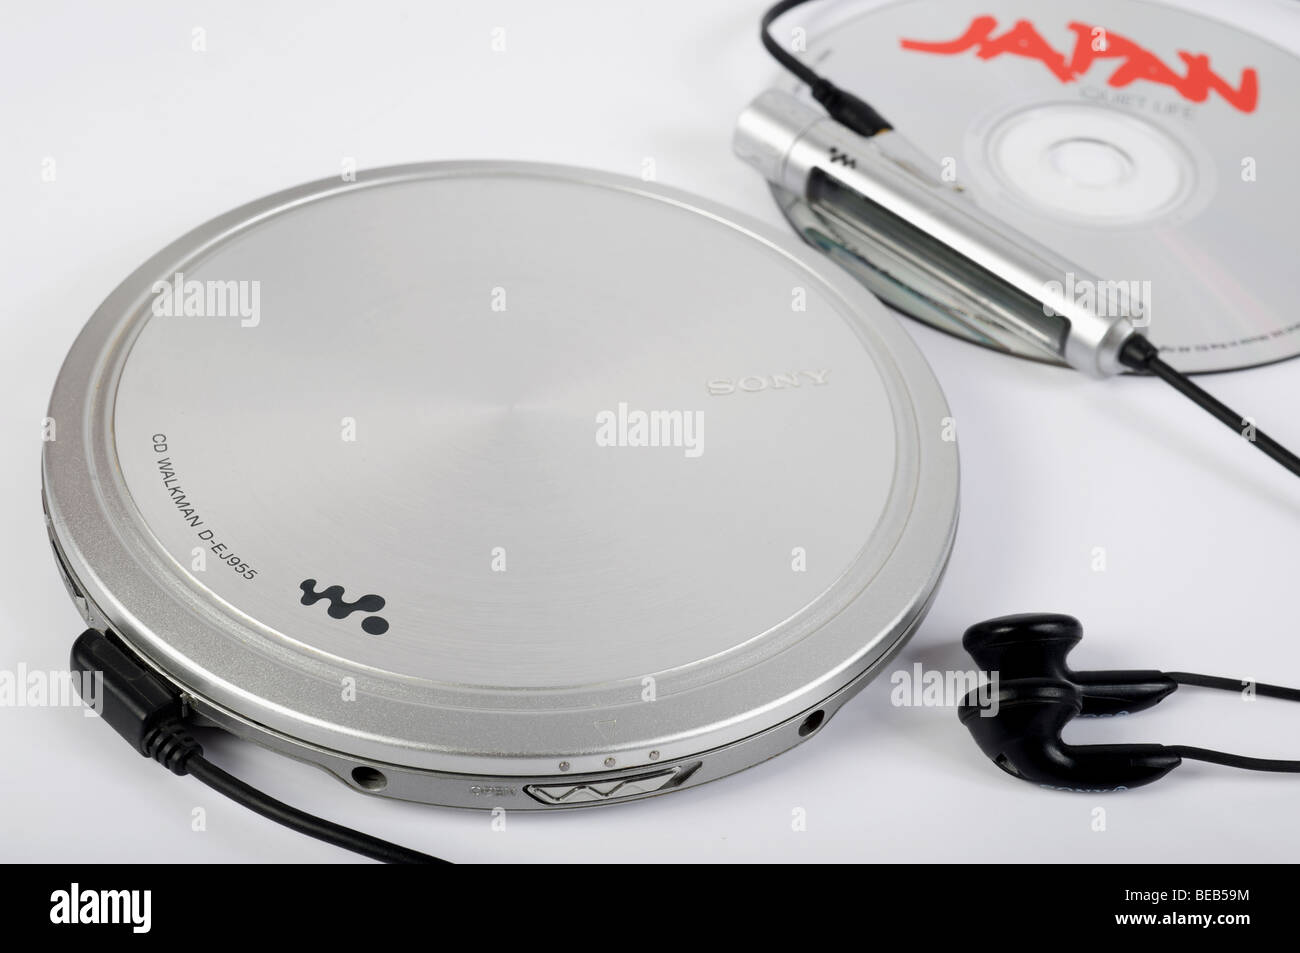 Sony Walkman CD player Stock Photo - Alamy